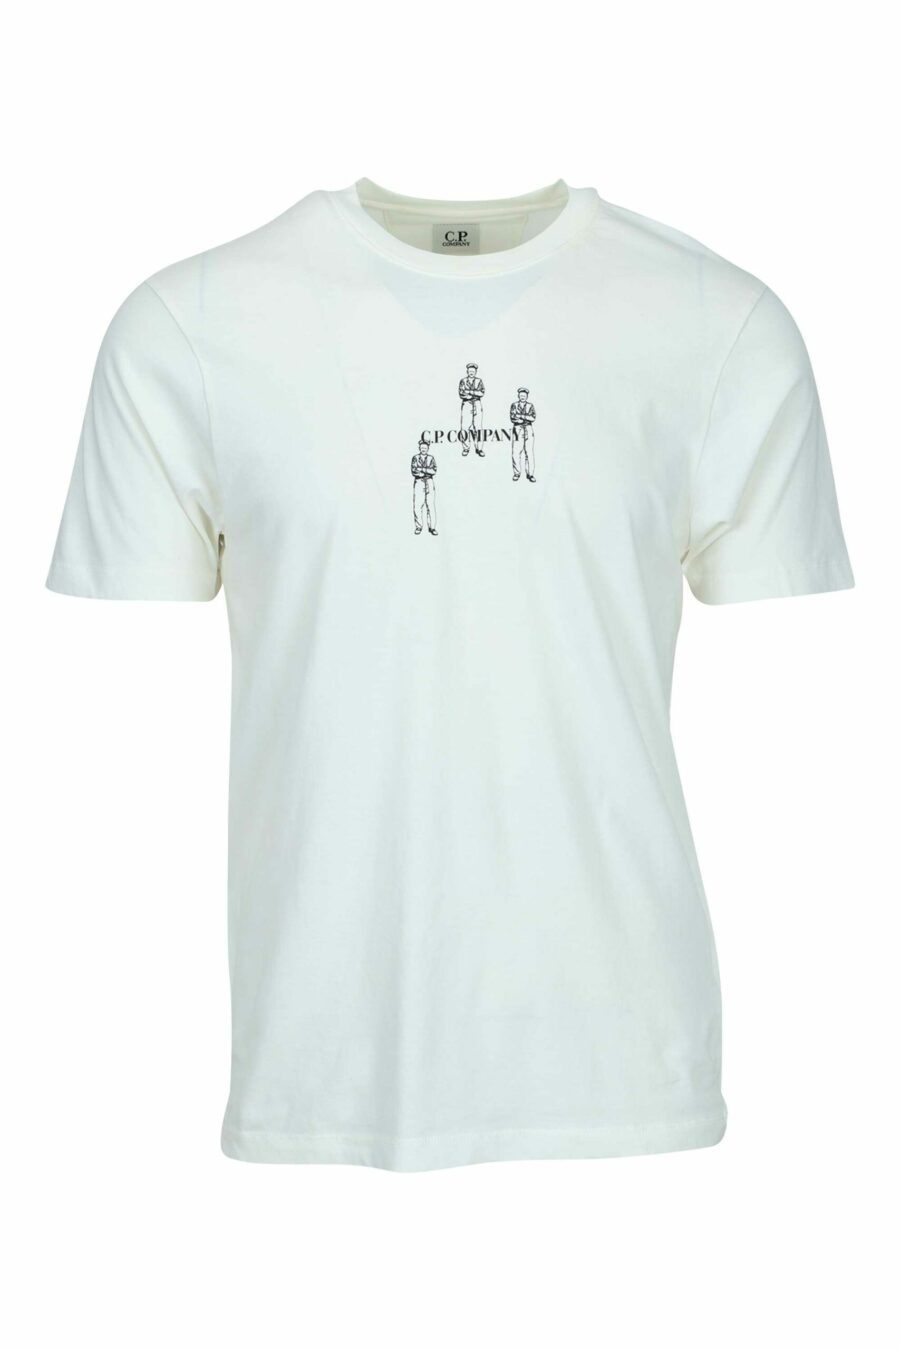 T-shirt blanc avec minilogue "cp" avec marins centrés - 7620943764369 scaled